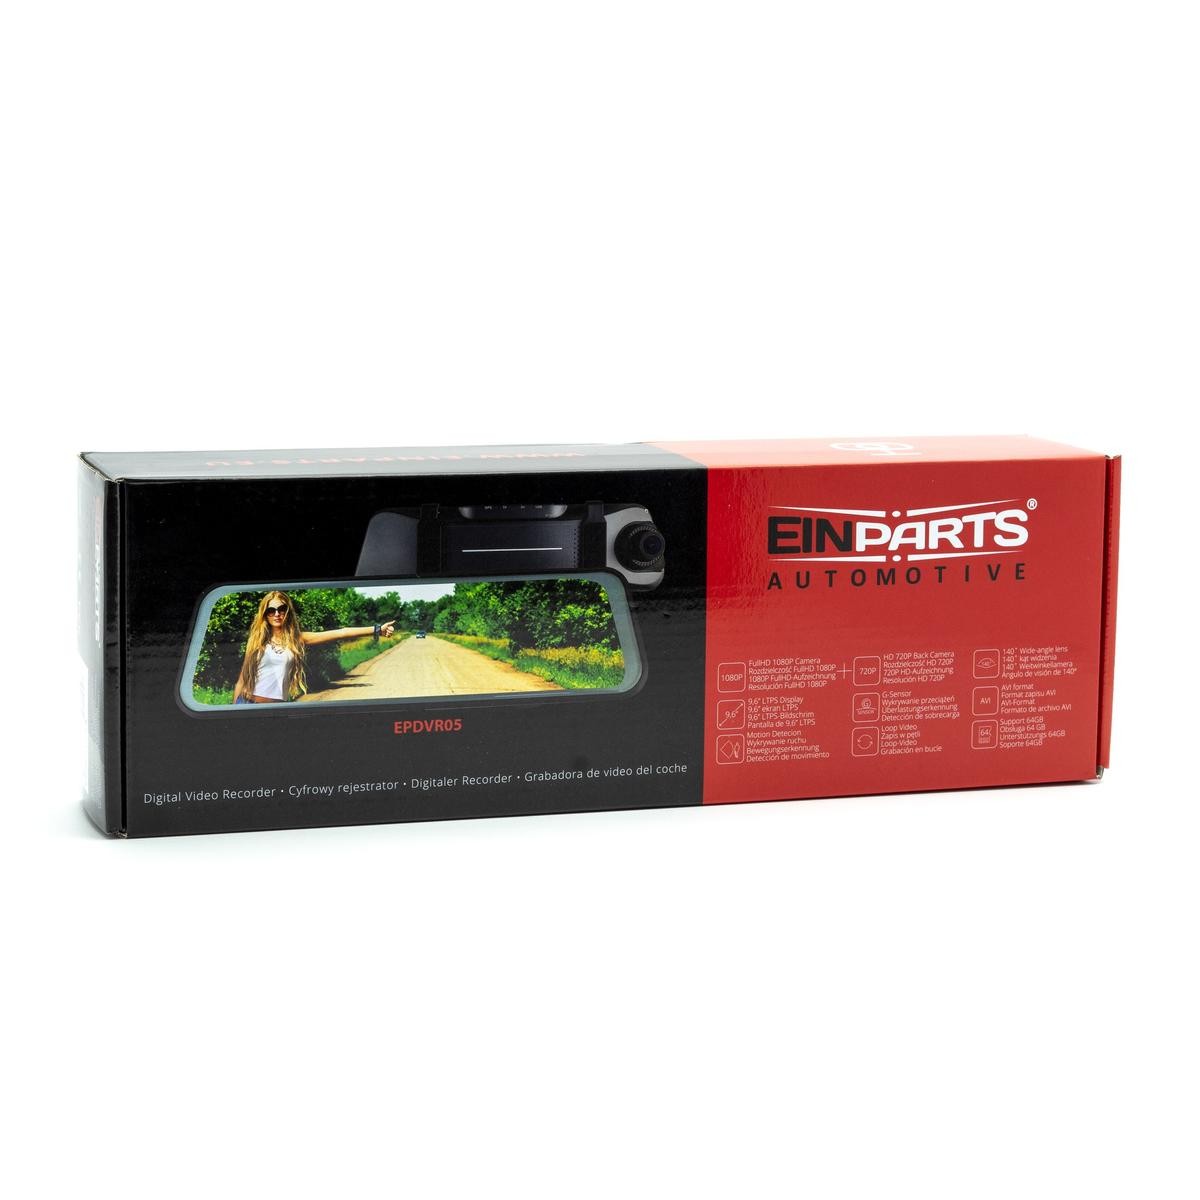 EINPARTS EPDVR05 DVR auto 9.6 Inch, 1080p, Angolo di visione 170°